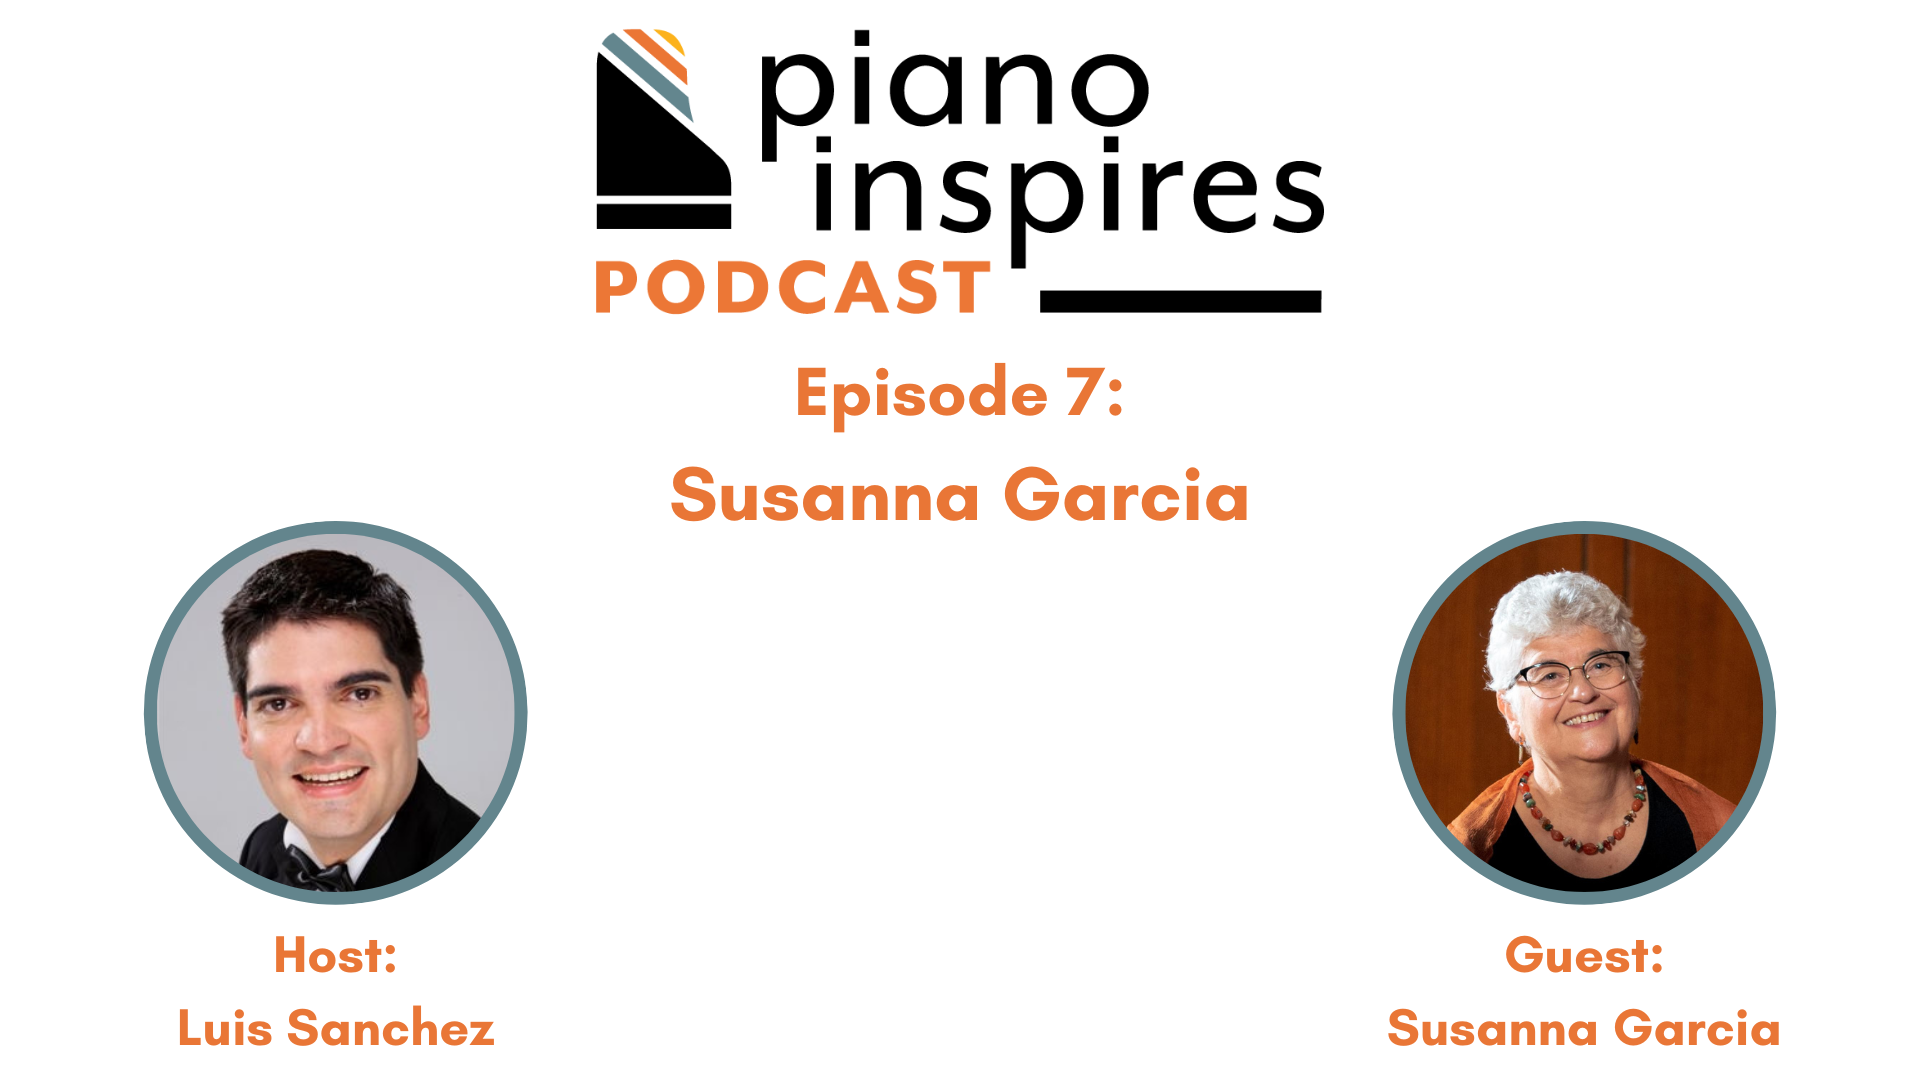 Episode 7: Susanna Garcia Discusses DEIB with Luis Sanchez